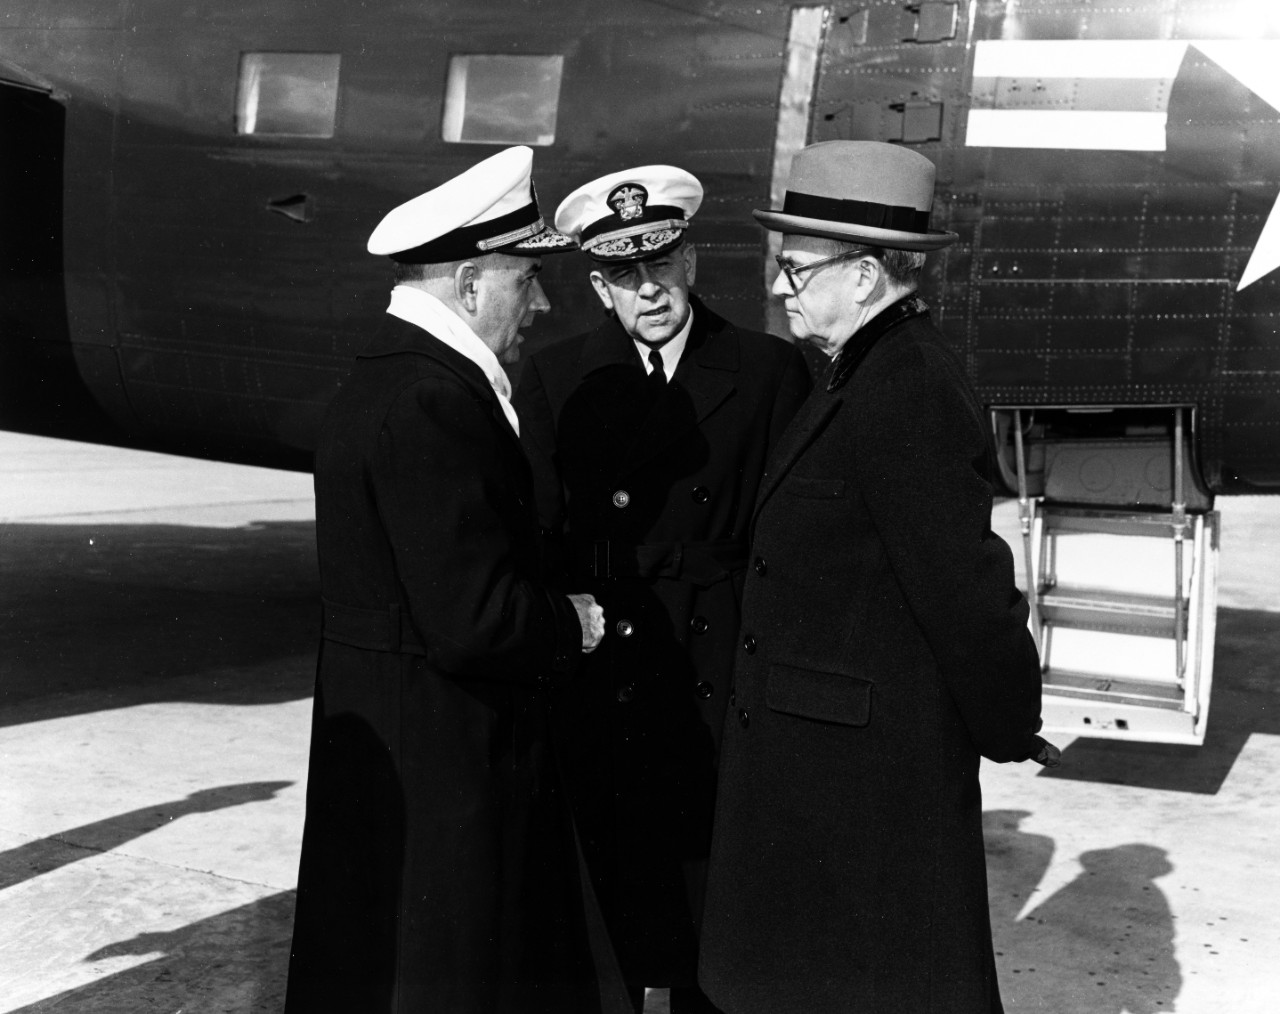 Photo #: 80-G-424550  Secretary of the Navy Francis P. Matthews (right)  